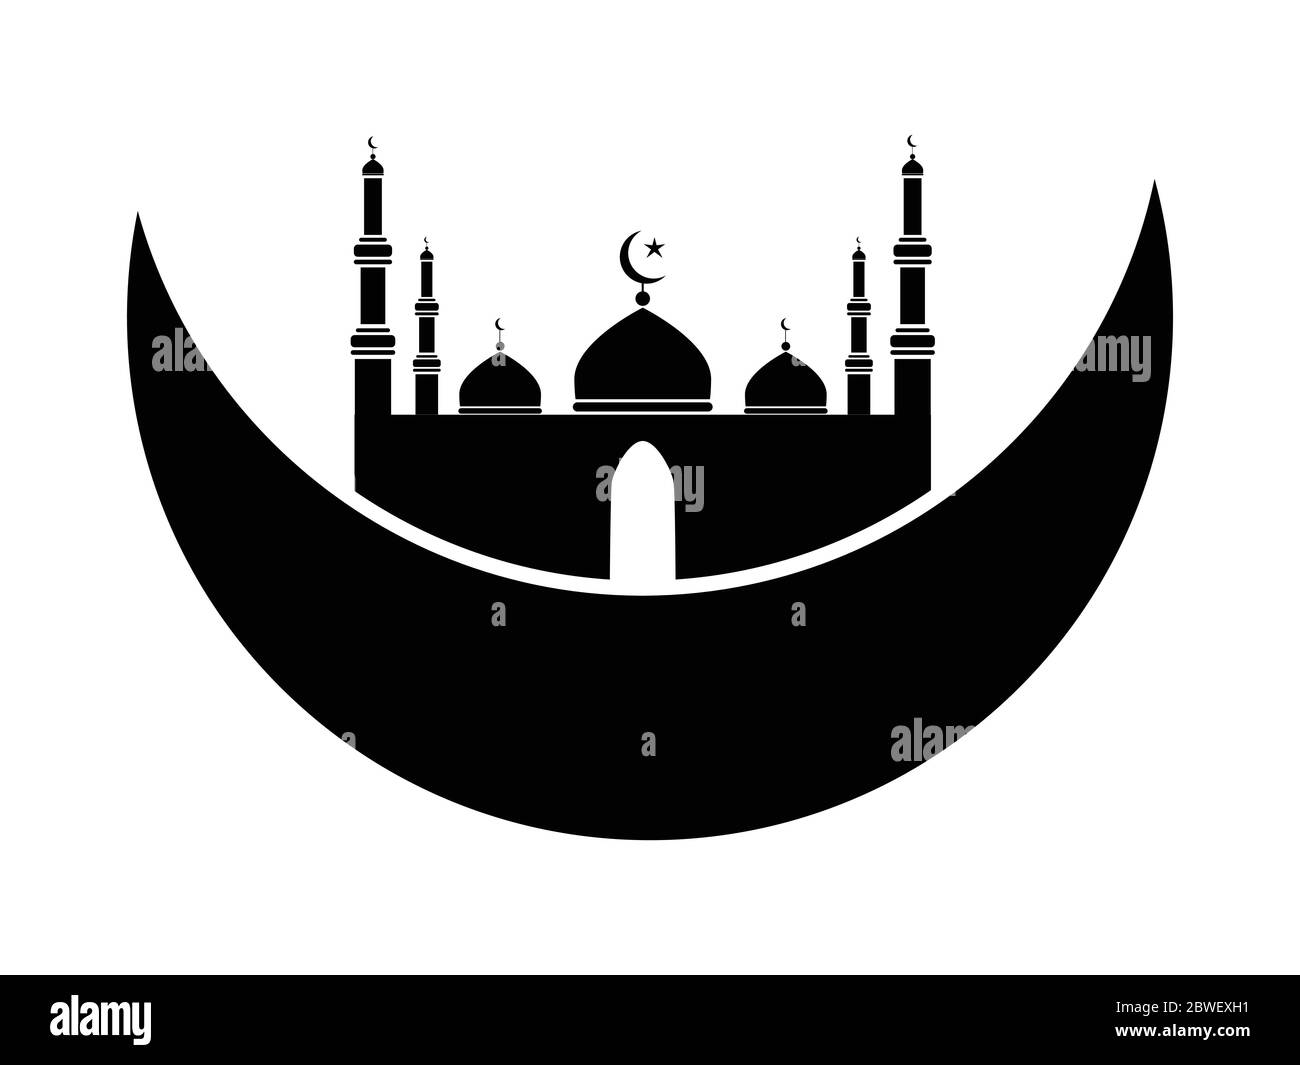 Islamische Moschee mit Halbmond darunter. Schwarz-weißes Piktogramm mit Moschee und Halbmond. EPS-Vektor Stock Vektor